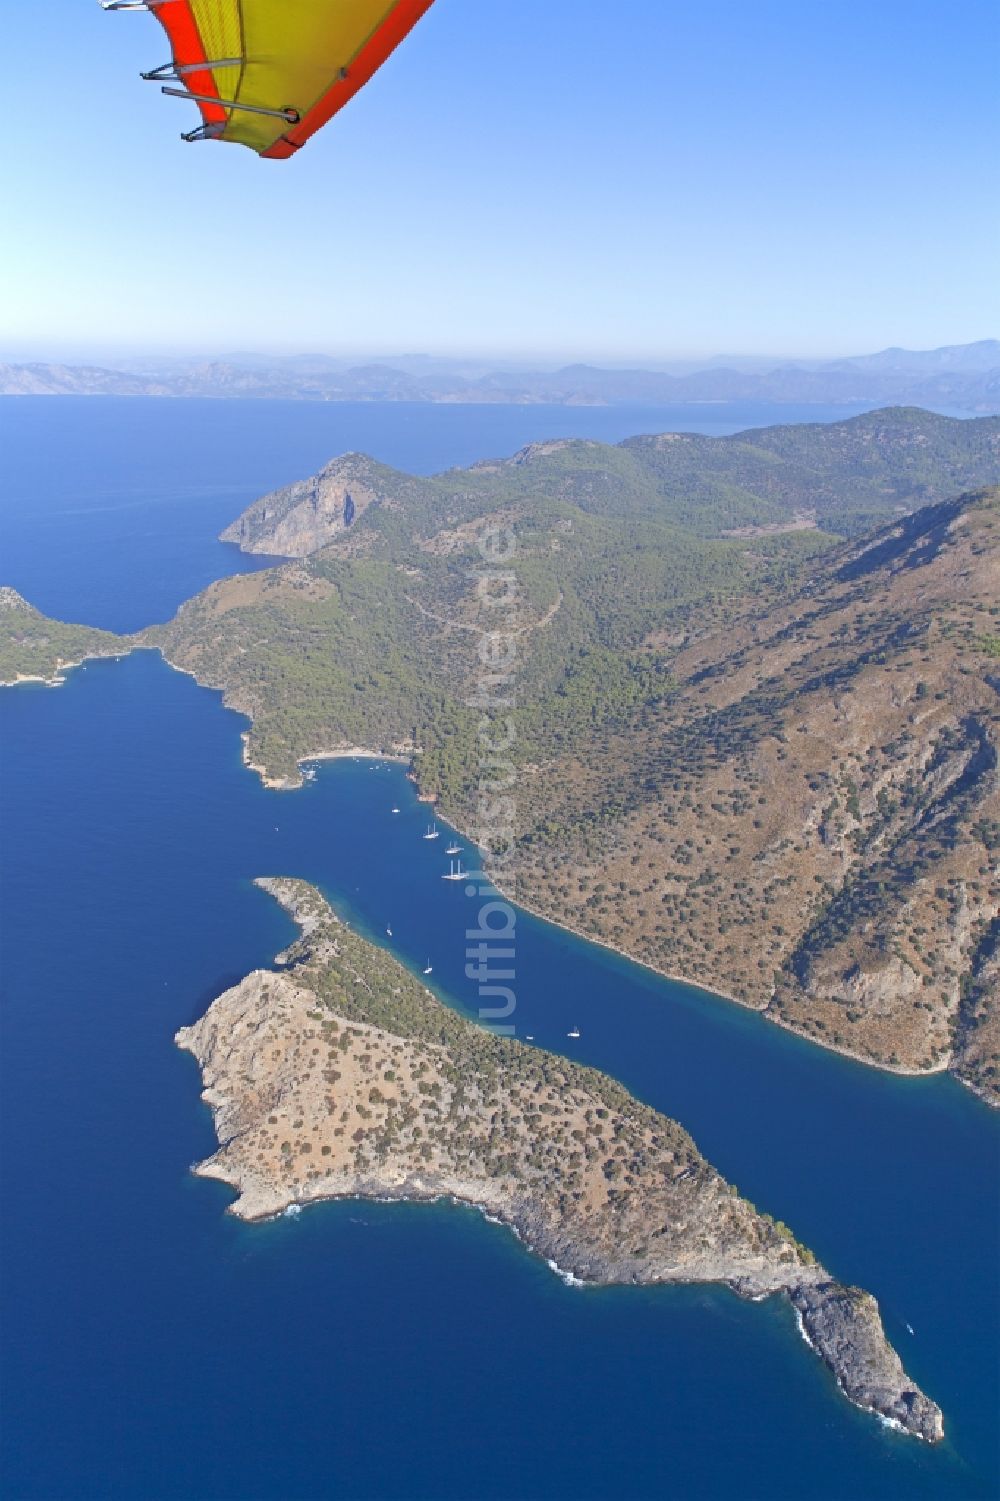 Ölüdeniz aus der Vogelperspektive: St-Nikolaus-Insel in der Bucht von Ölüdeniz an der Türkischen Ägäis in der Türkei